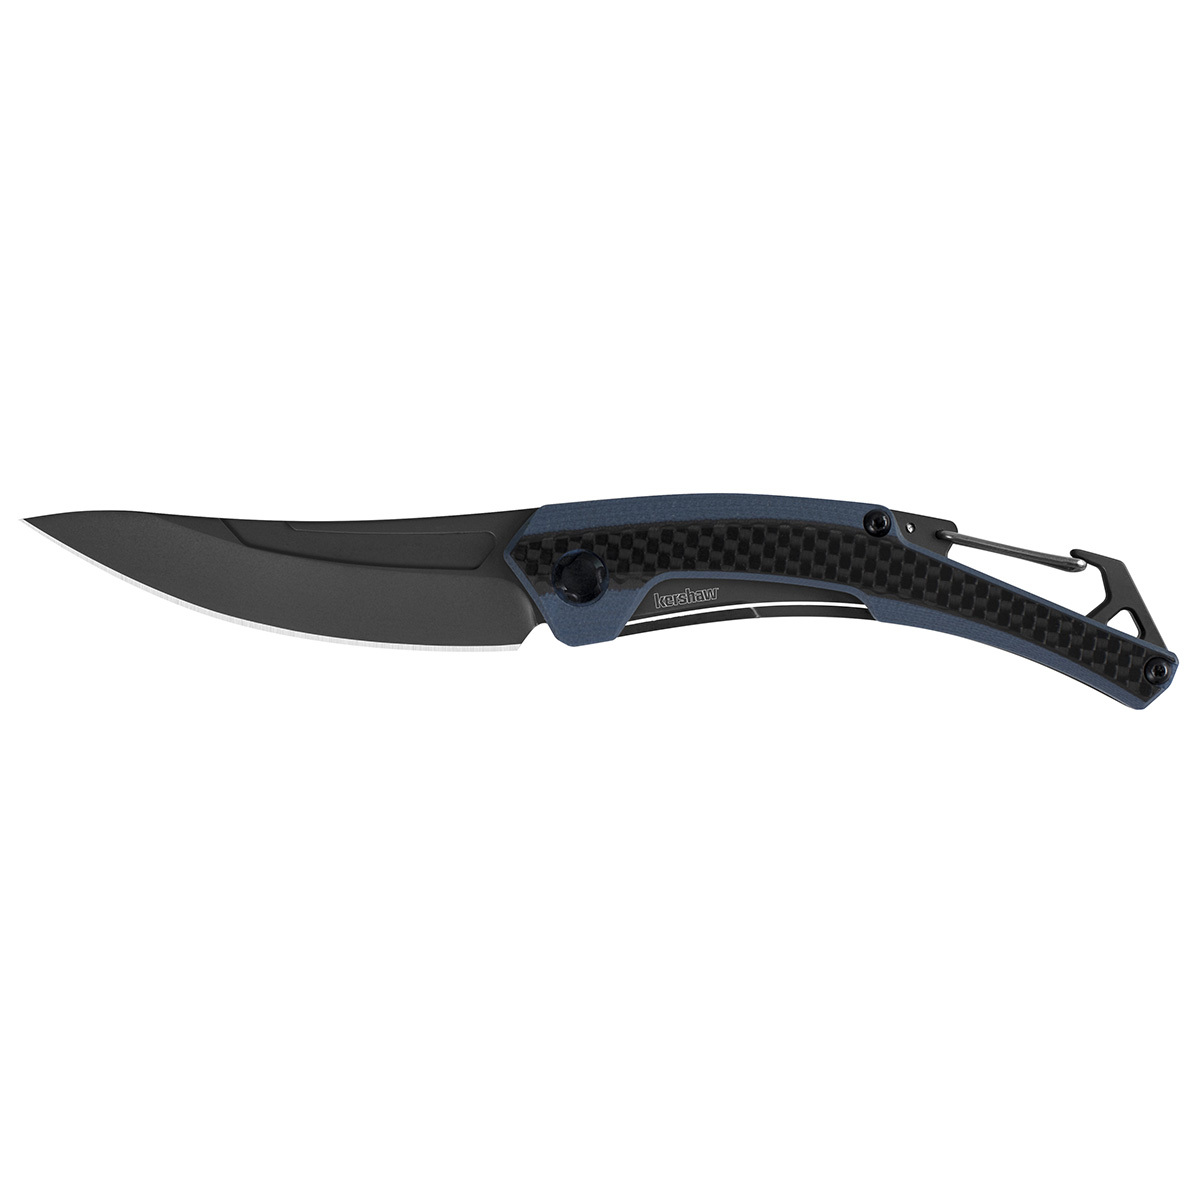 Складной нож Kershaw Reverb XL K1225, сталь 8Cr13MoV набор из 3 х ножей фиксированным клинком crkt   fork hunting knife set сталь 8cr13mov цельнометаллические